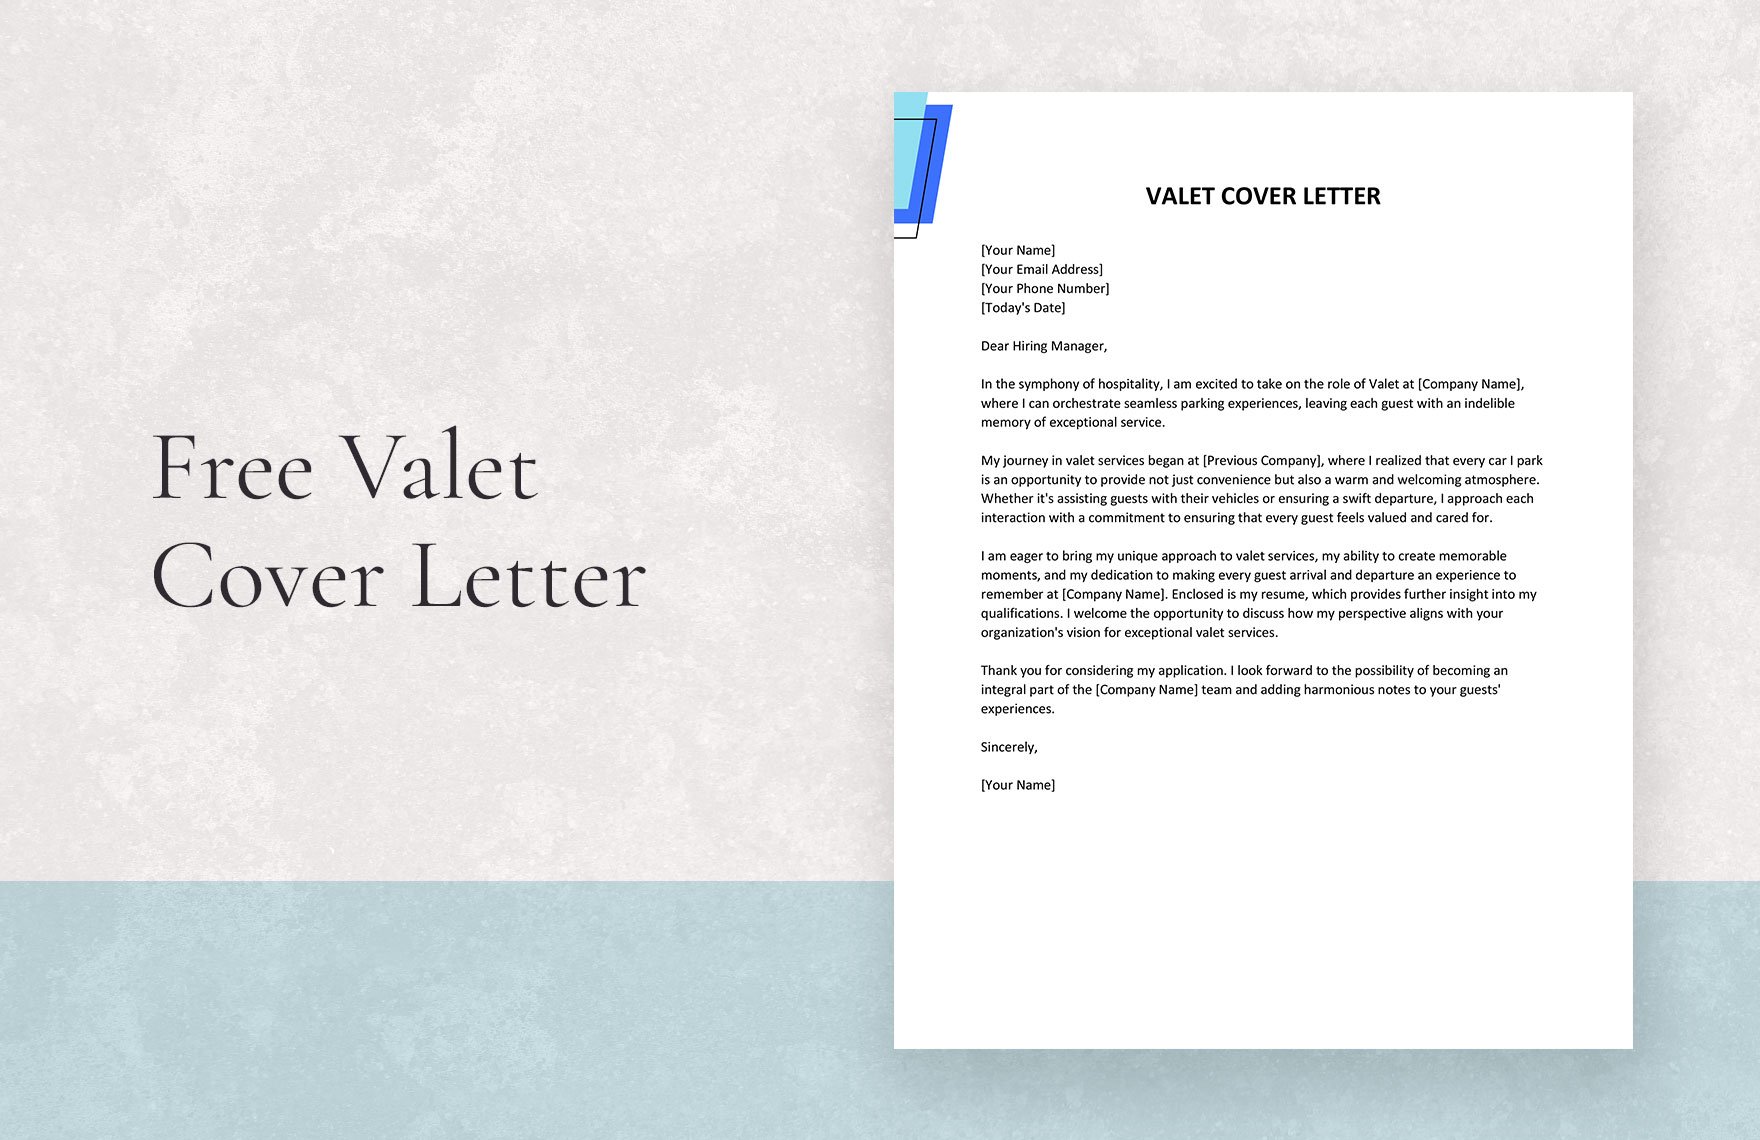 Valet Cover Letter